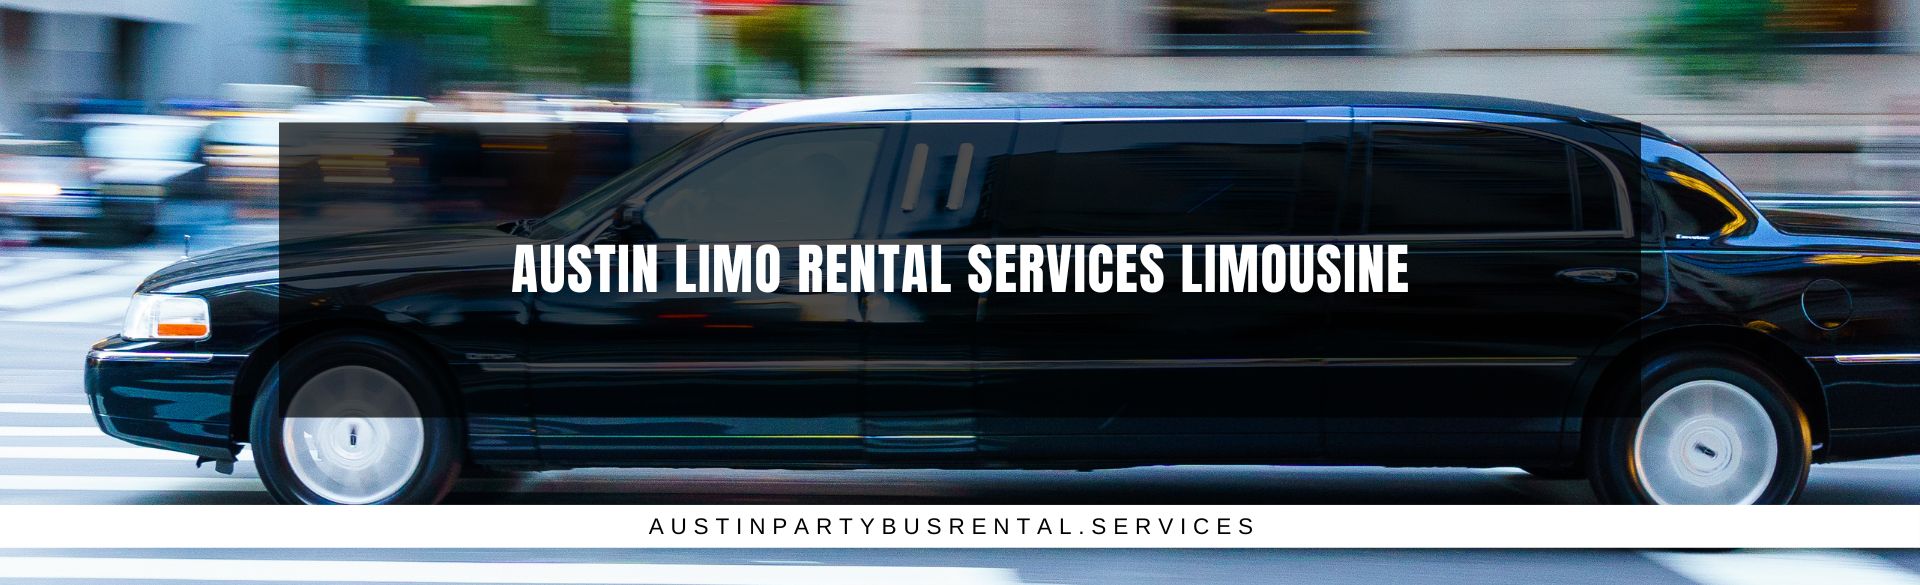 Austin Limo Rental Services Limousine